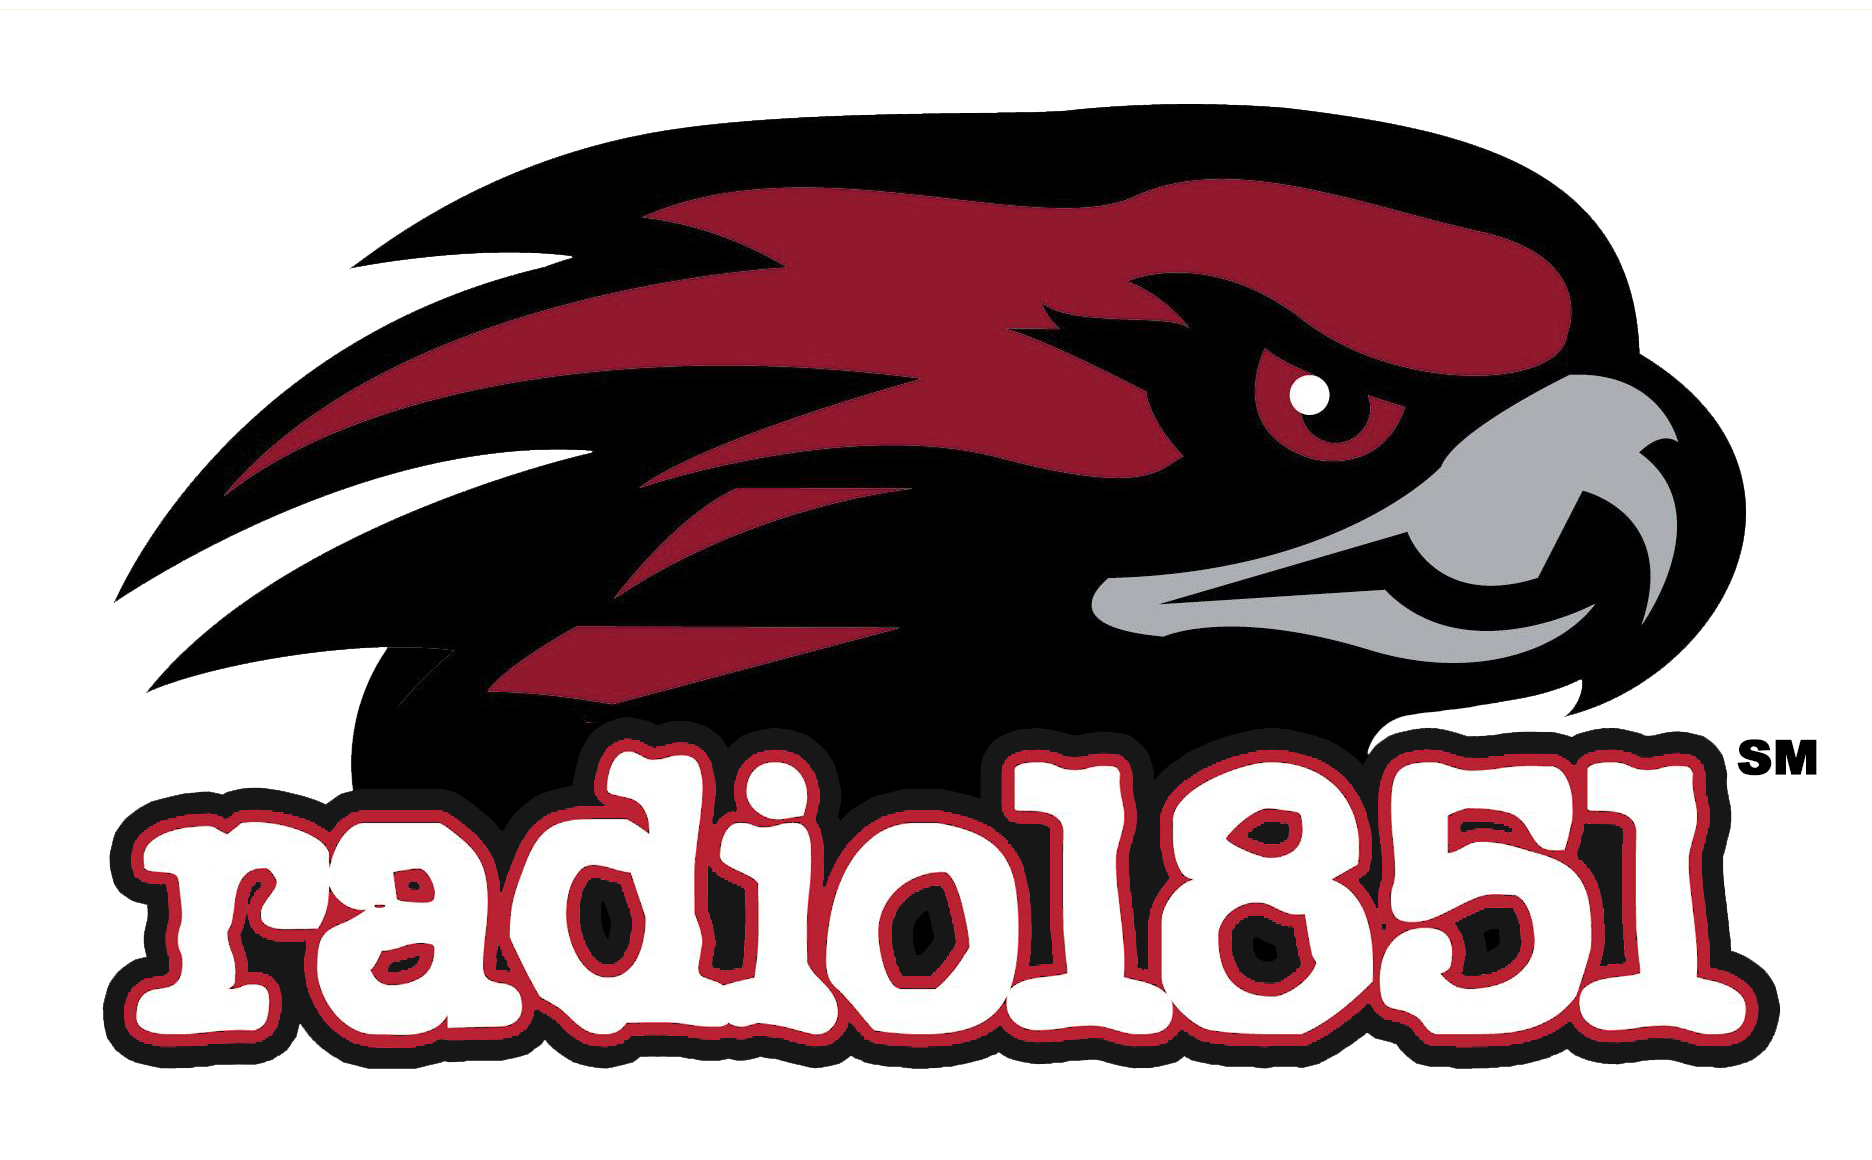 Radio 1851